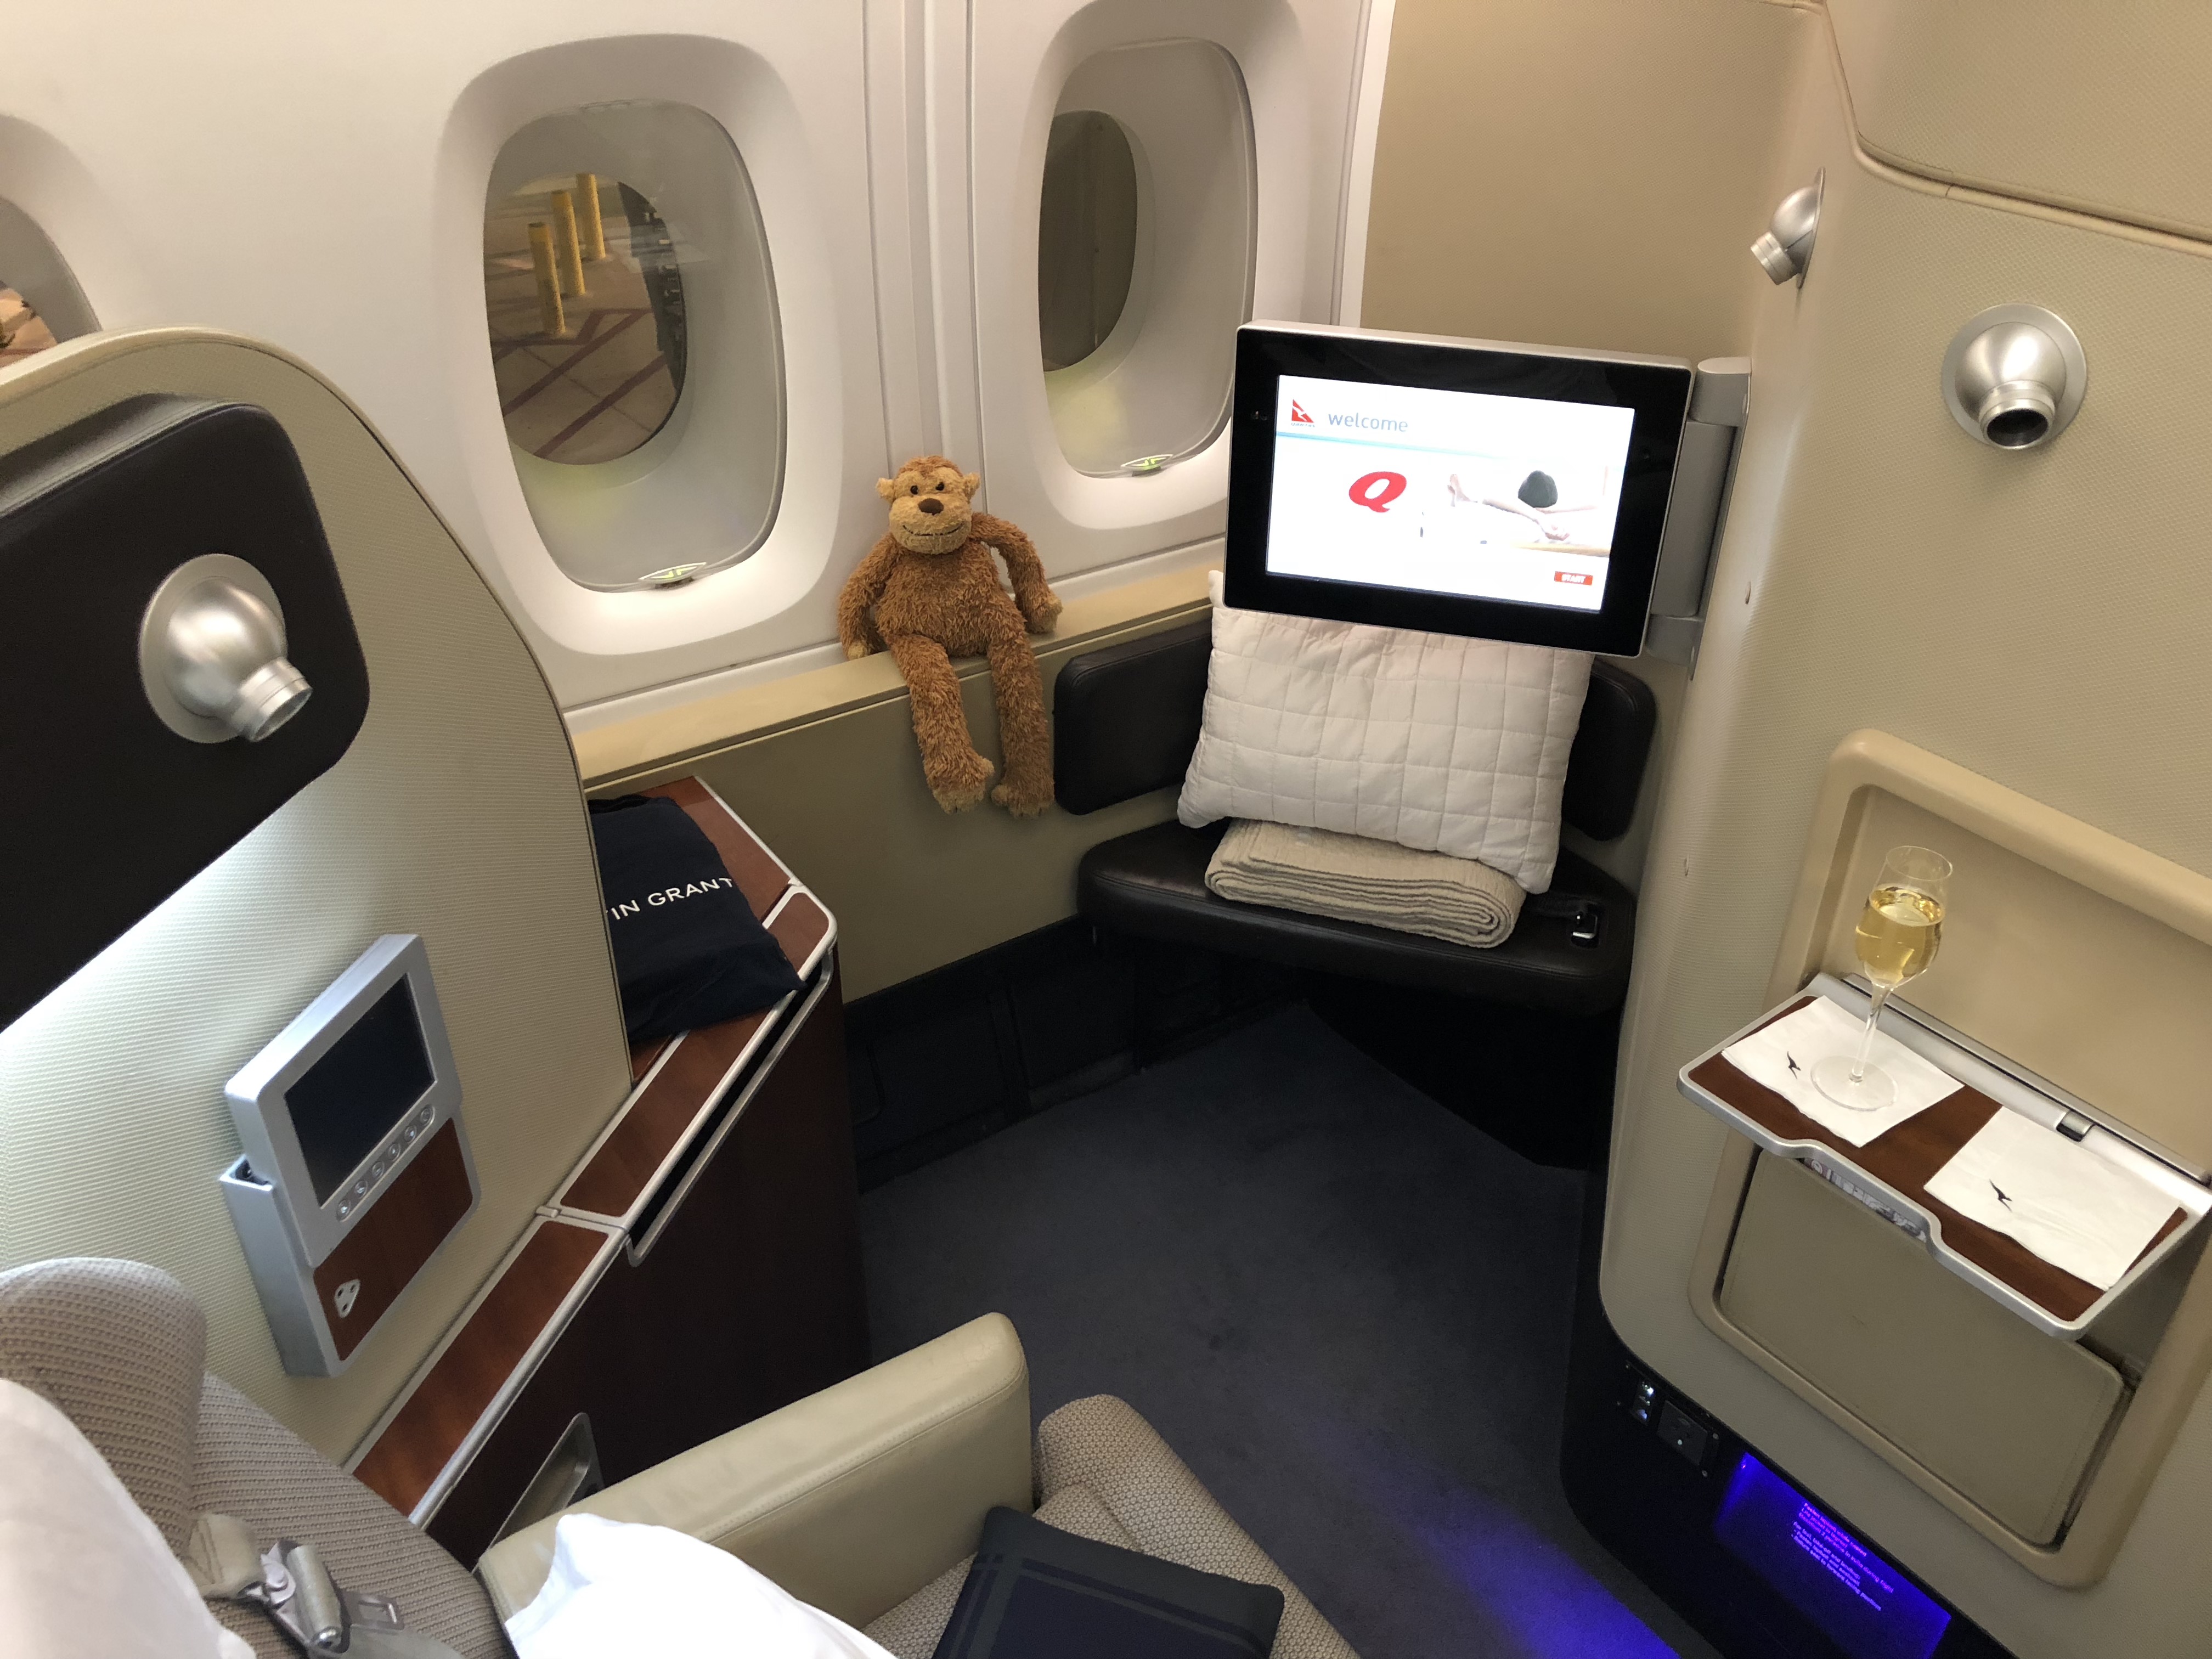 qantas first class a380 review